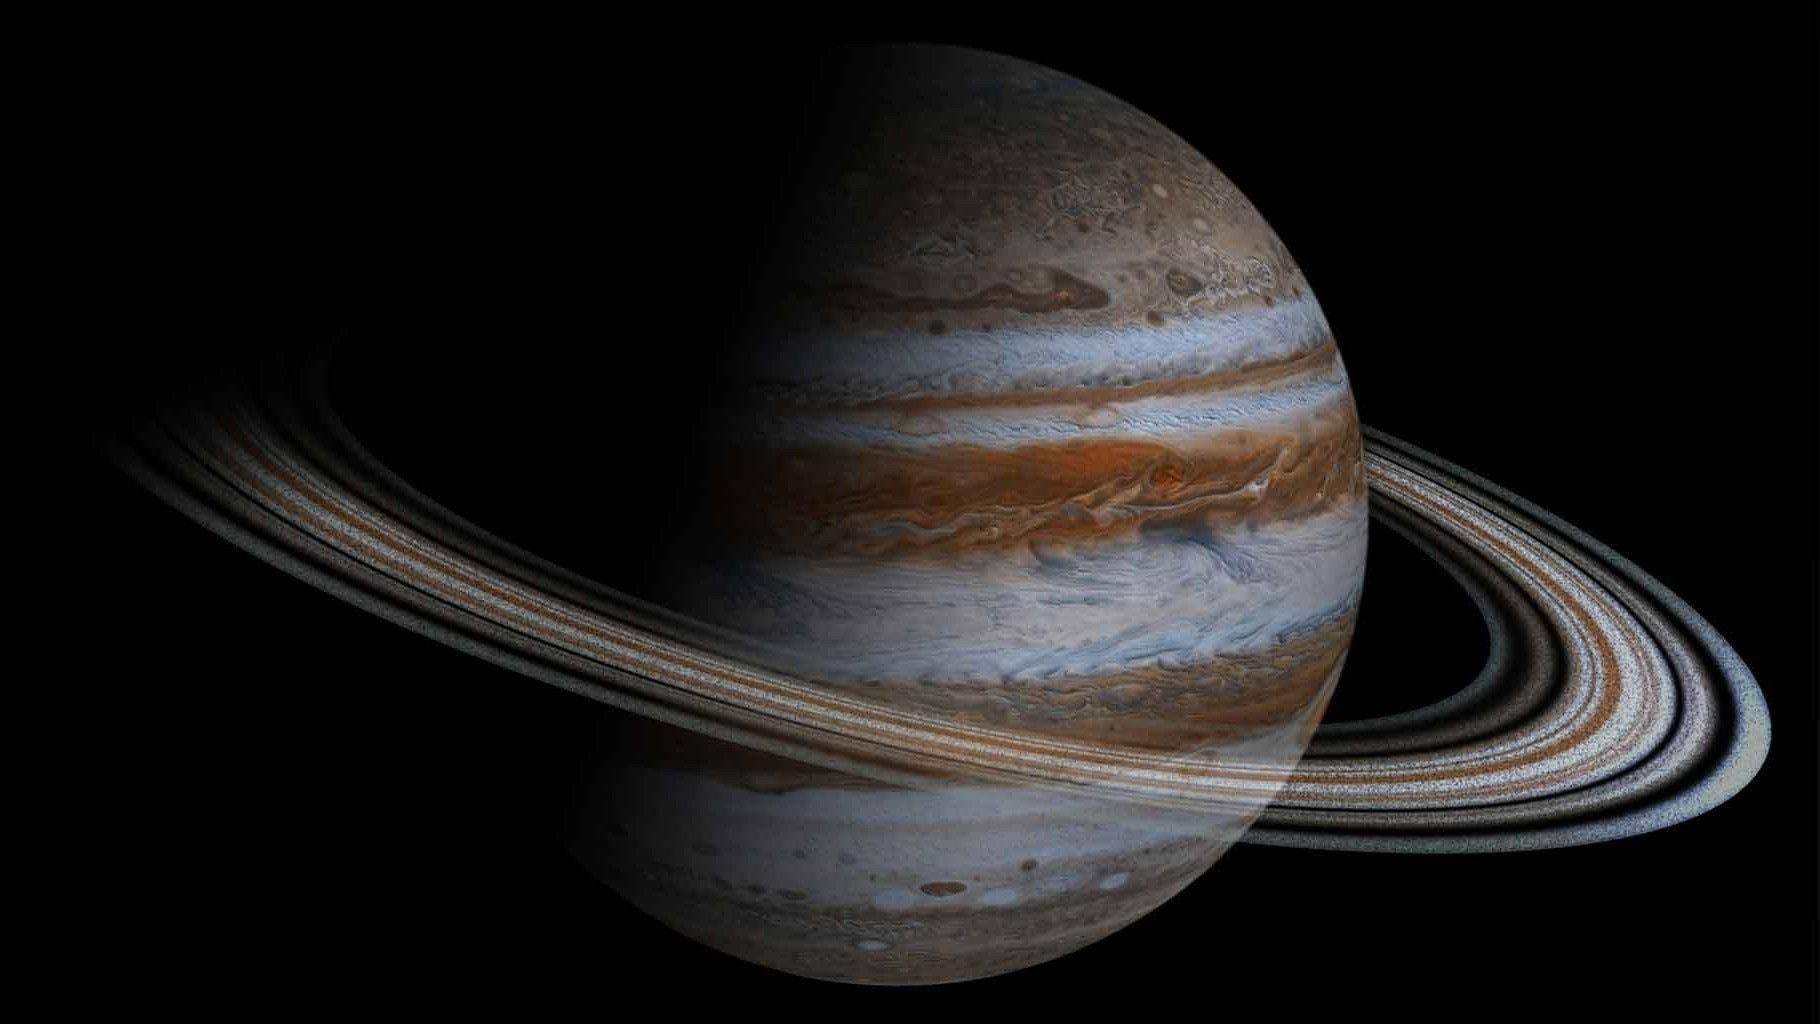 "Безодня Юпітера": космічний корабель зробив неймовірний знімок вихору на поверхні планети